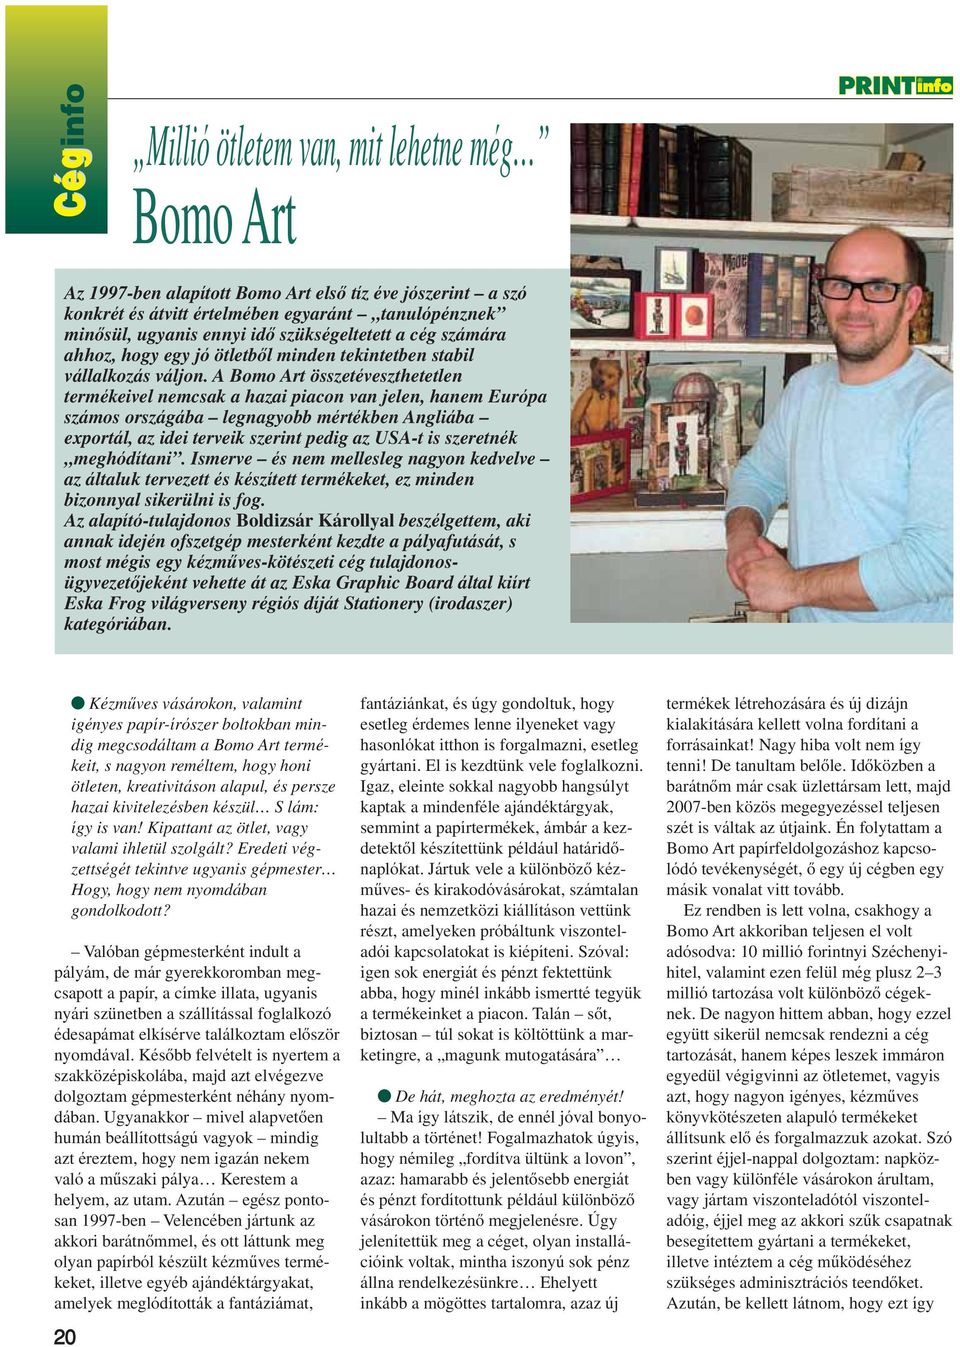 A Bomo Art összetéveszthetetlen termékeivel nemcsak a hazai piacon van jelen, hanem Európa számos országába legnagyobb mértékben Angliába exportál, az idei terveik szerint pedig az USA-t is szeretnék